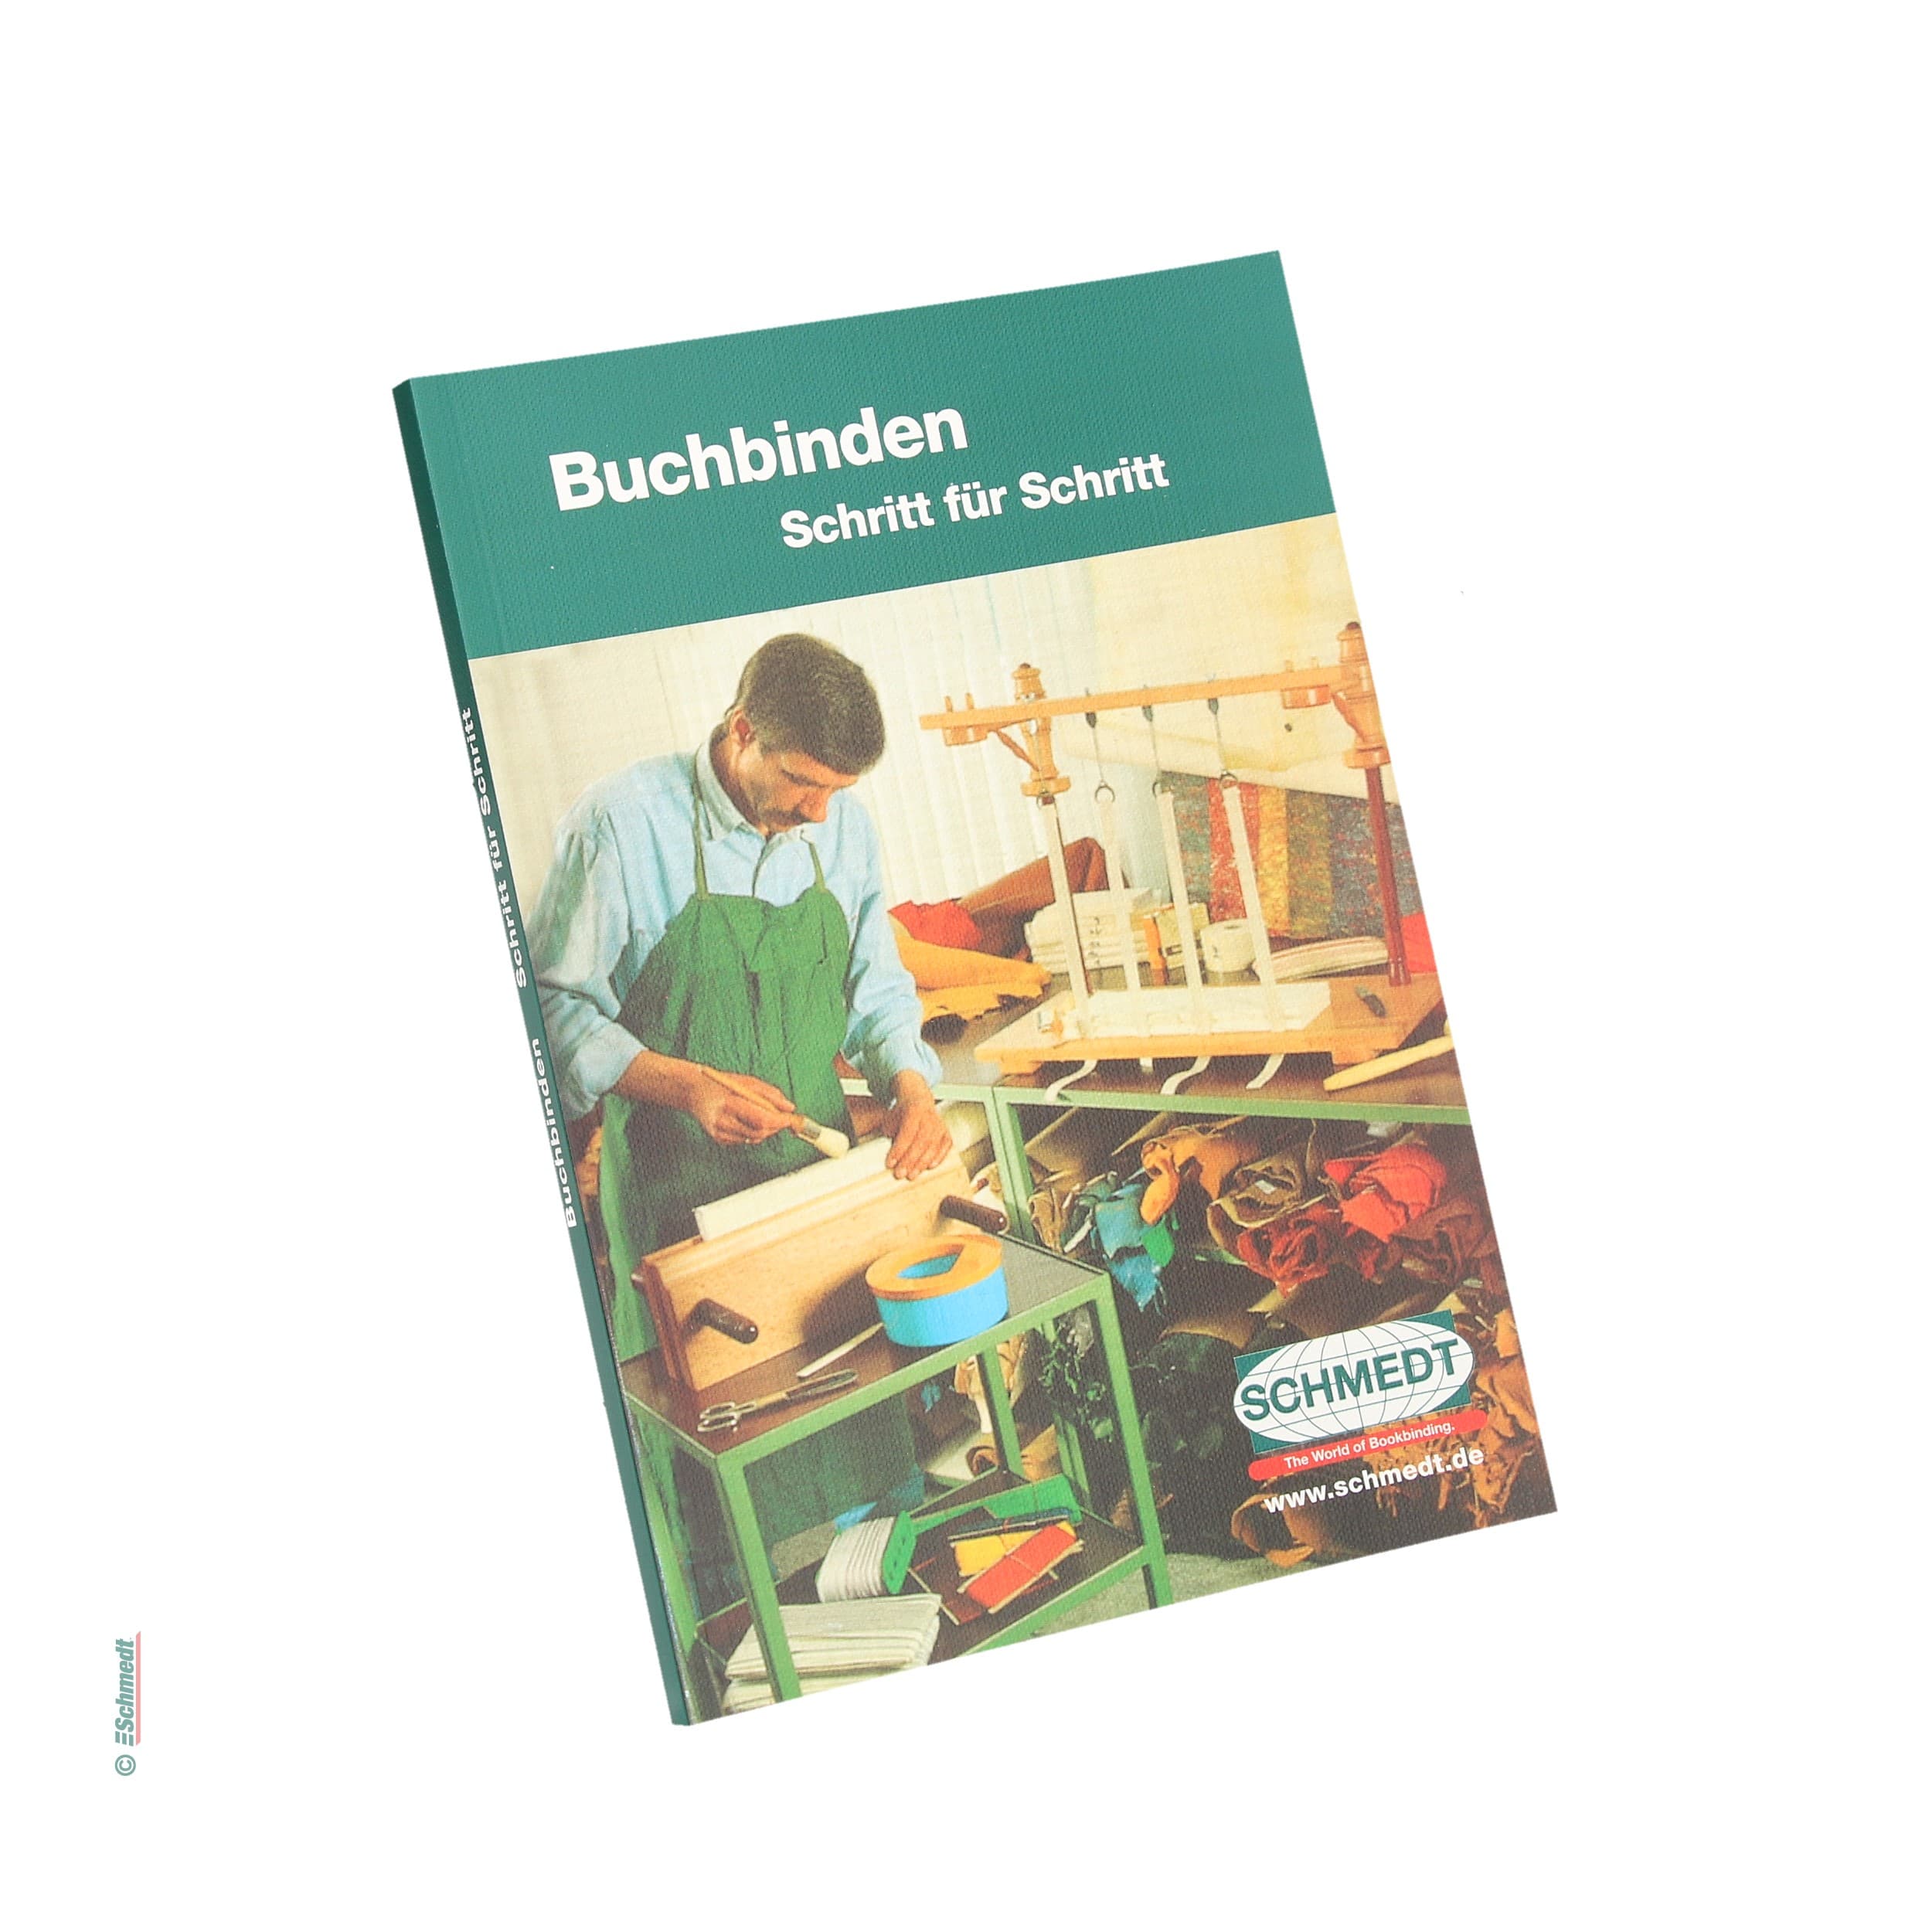 "Buchbinden Schritt für Schritt" - Guía para la encuadernación artesanal - » Formato: DIN A5, aprox. 130 páginas
» Lengua: alemán
» © 2009...